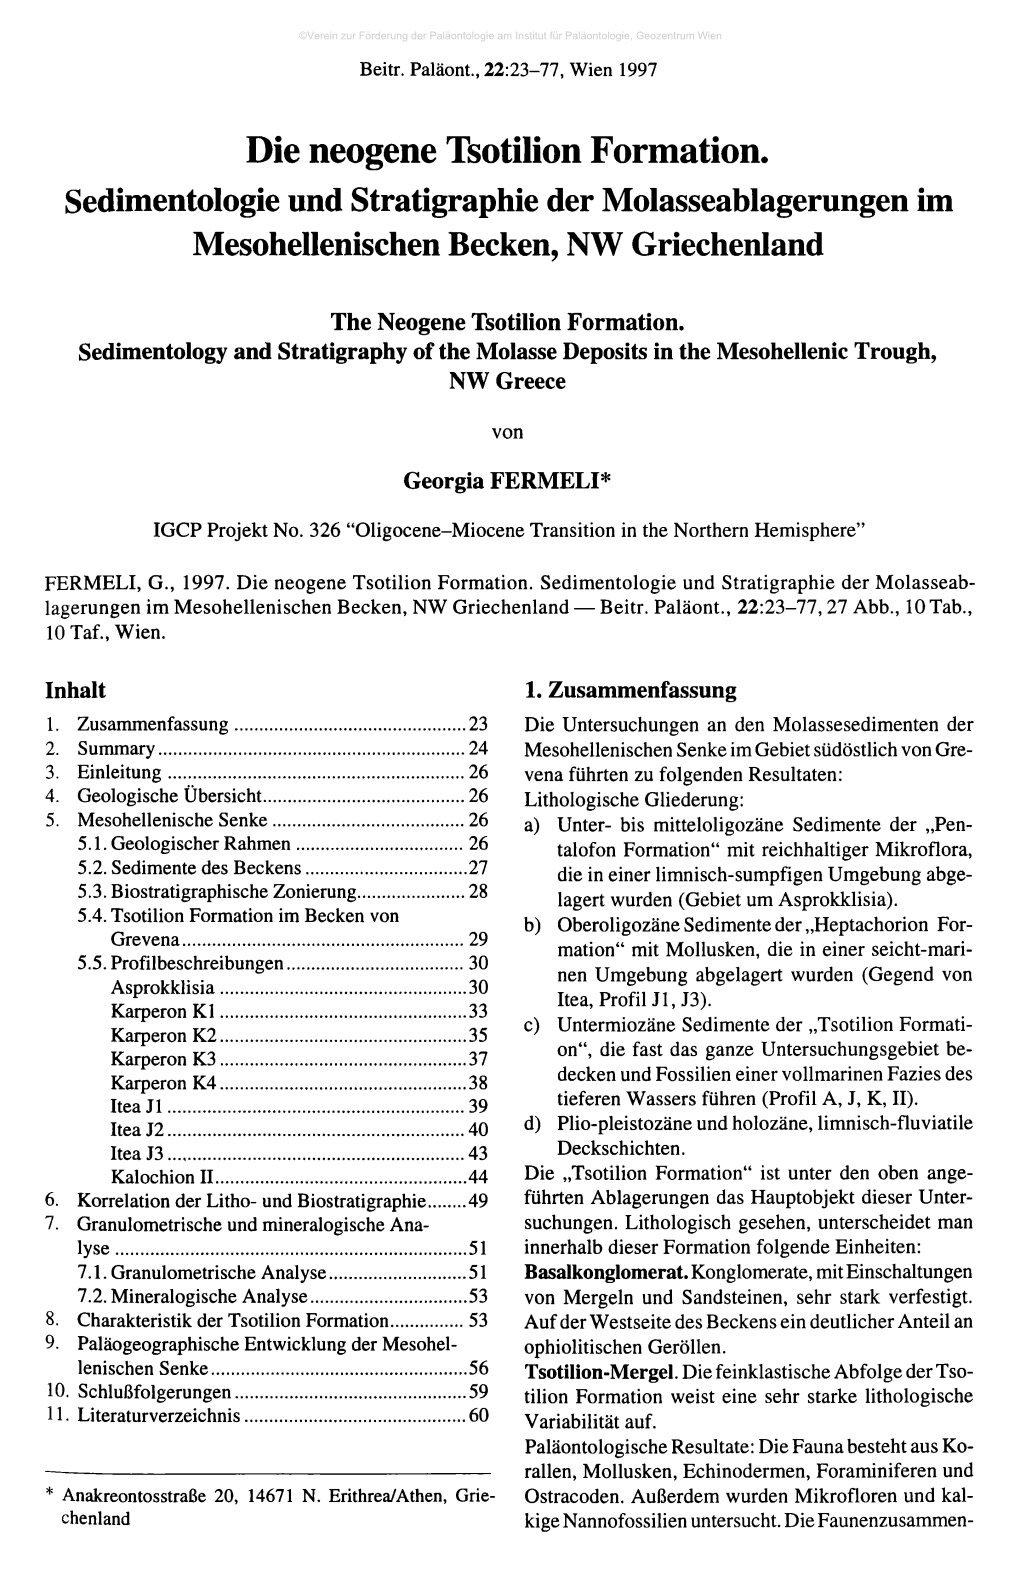 Die Neogene Tsotilion Formation. Sedimentologie Und Stratigraphie Der Molasseablagerungen Im Mesohellenischen Becken, NW Griechenland